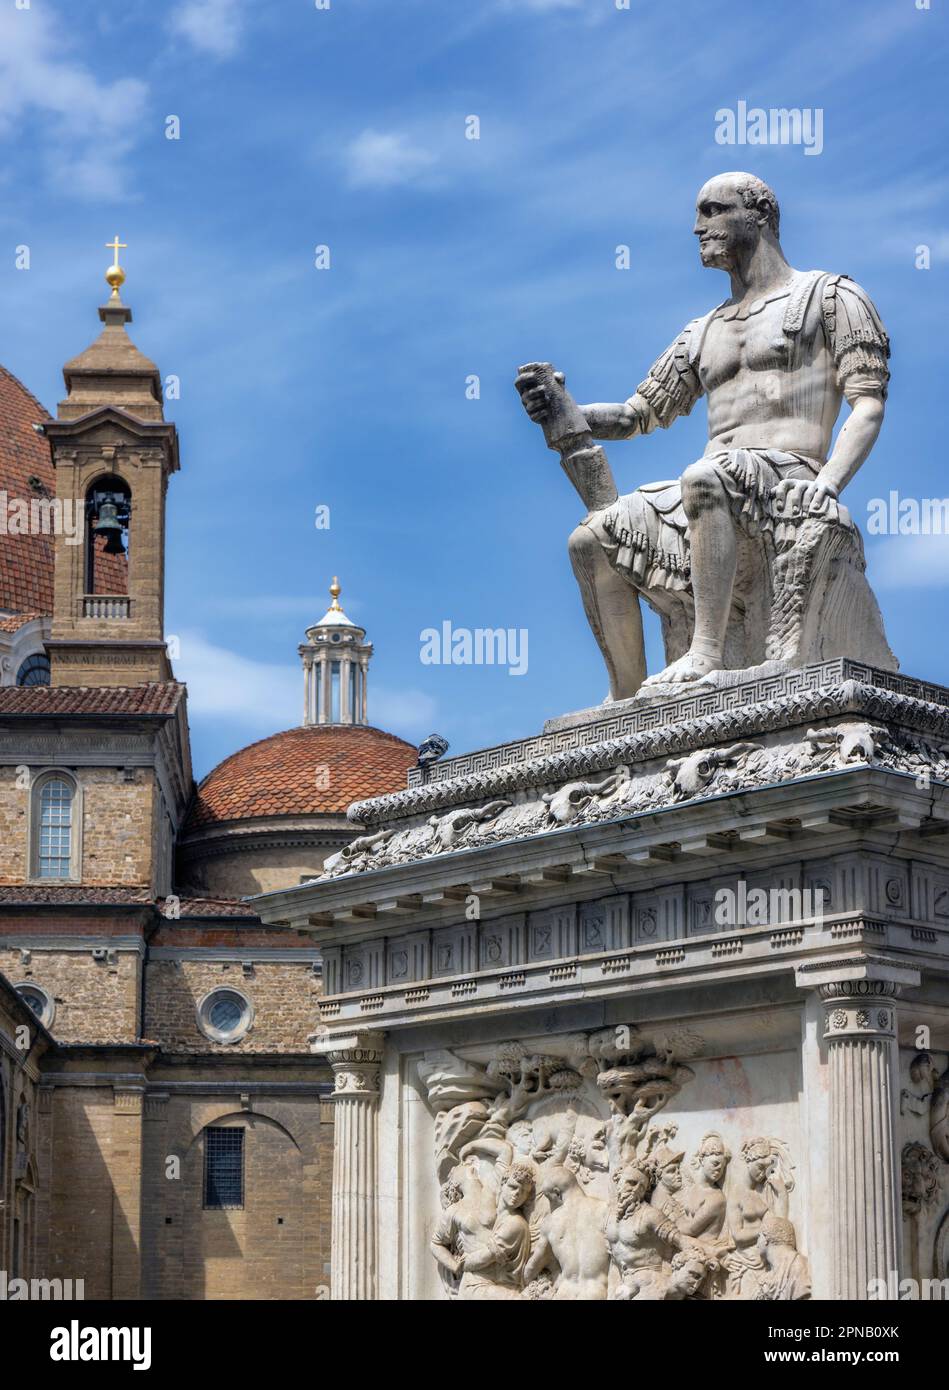 Monumento a Lodovico de' Medici, detto Giovanni delle bande nere, in Piazza San Lorenzo, Firenze, Toscana, Italia. Il Rinascimento italiano mar Foto Stock